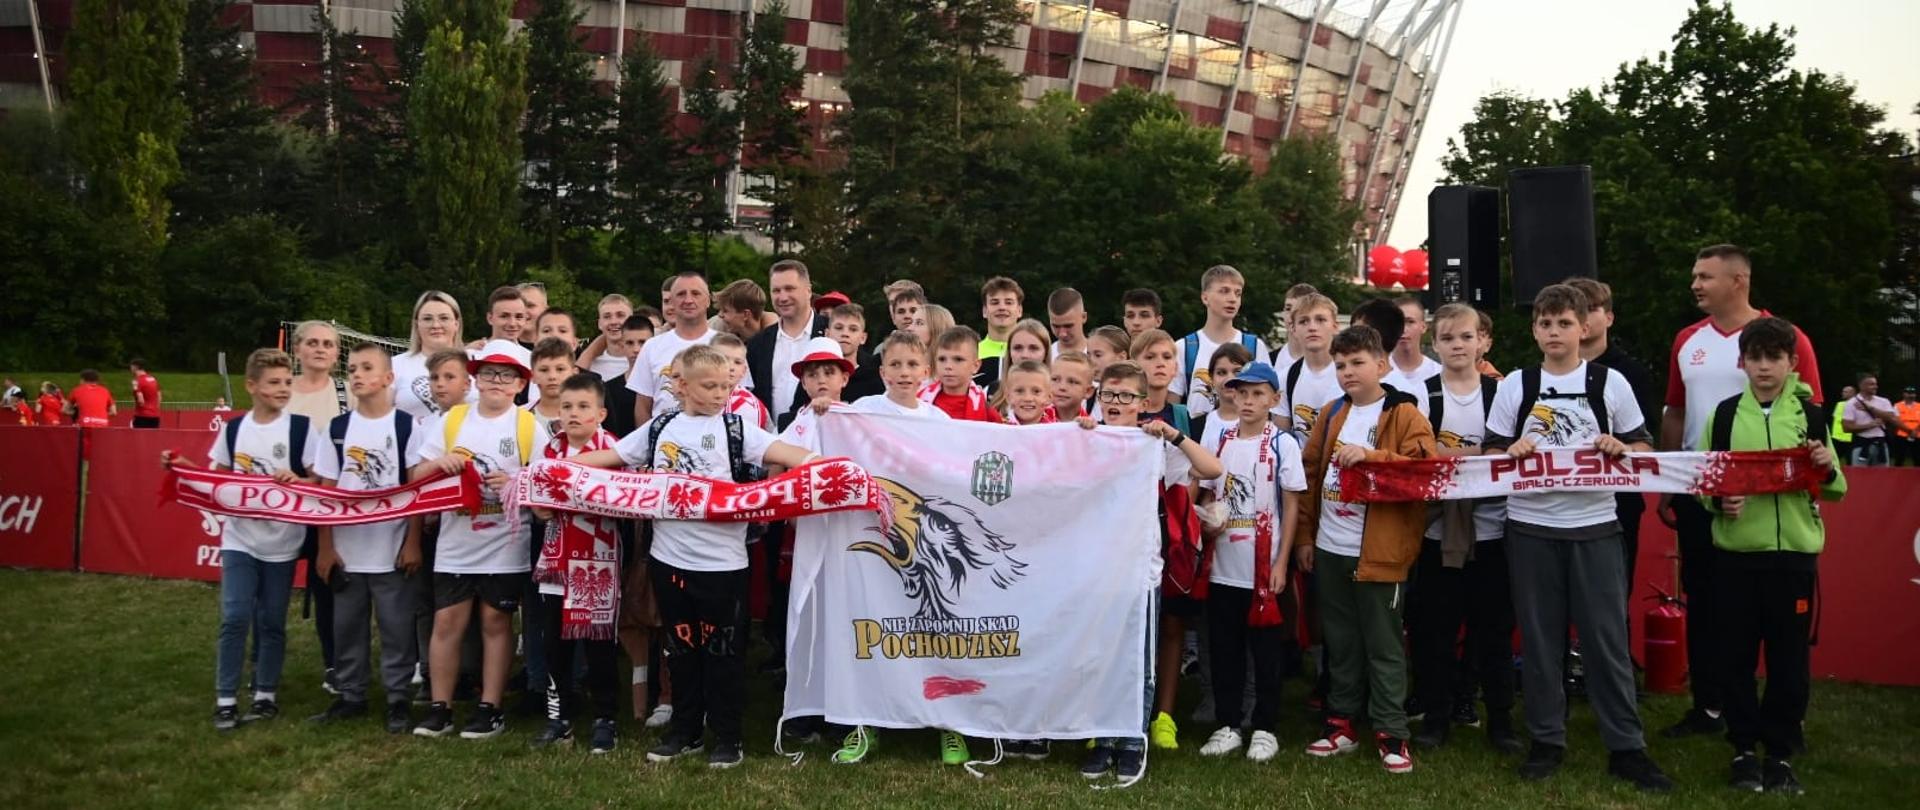 Na zielonej trawie stoi duża grupa dzieci trzymających biało-czerwone szaliki, za nimi drzewa i Stadion Narodowy.
